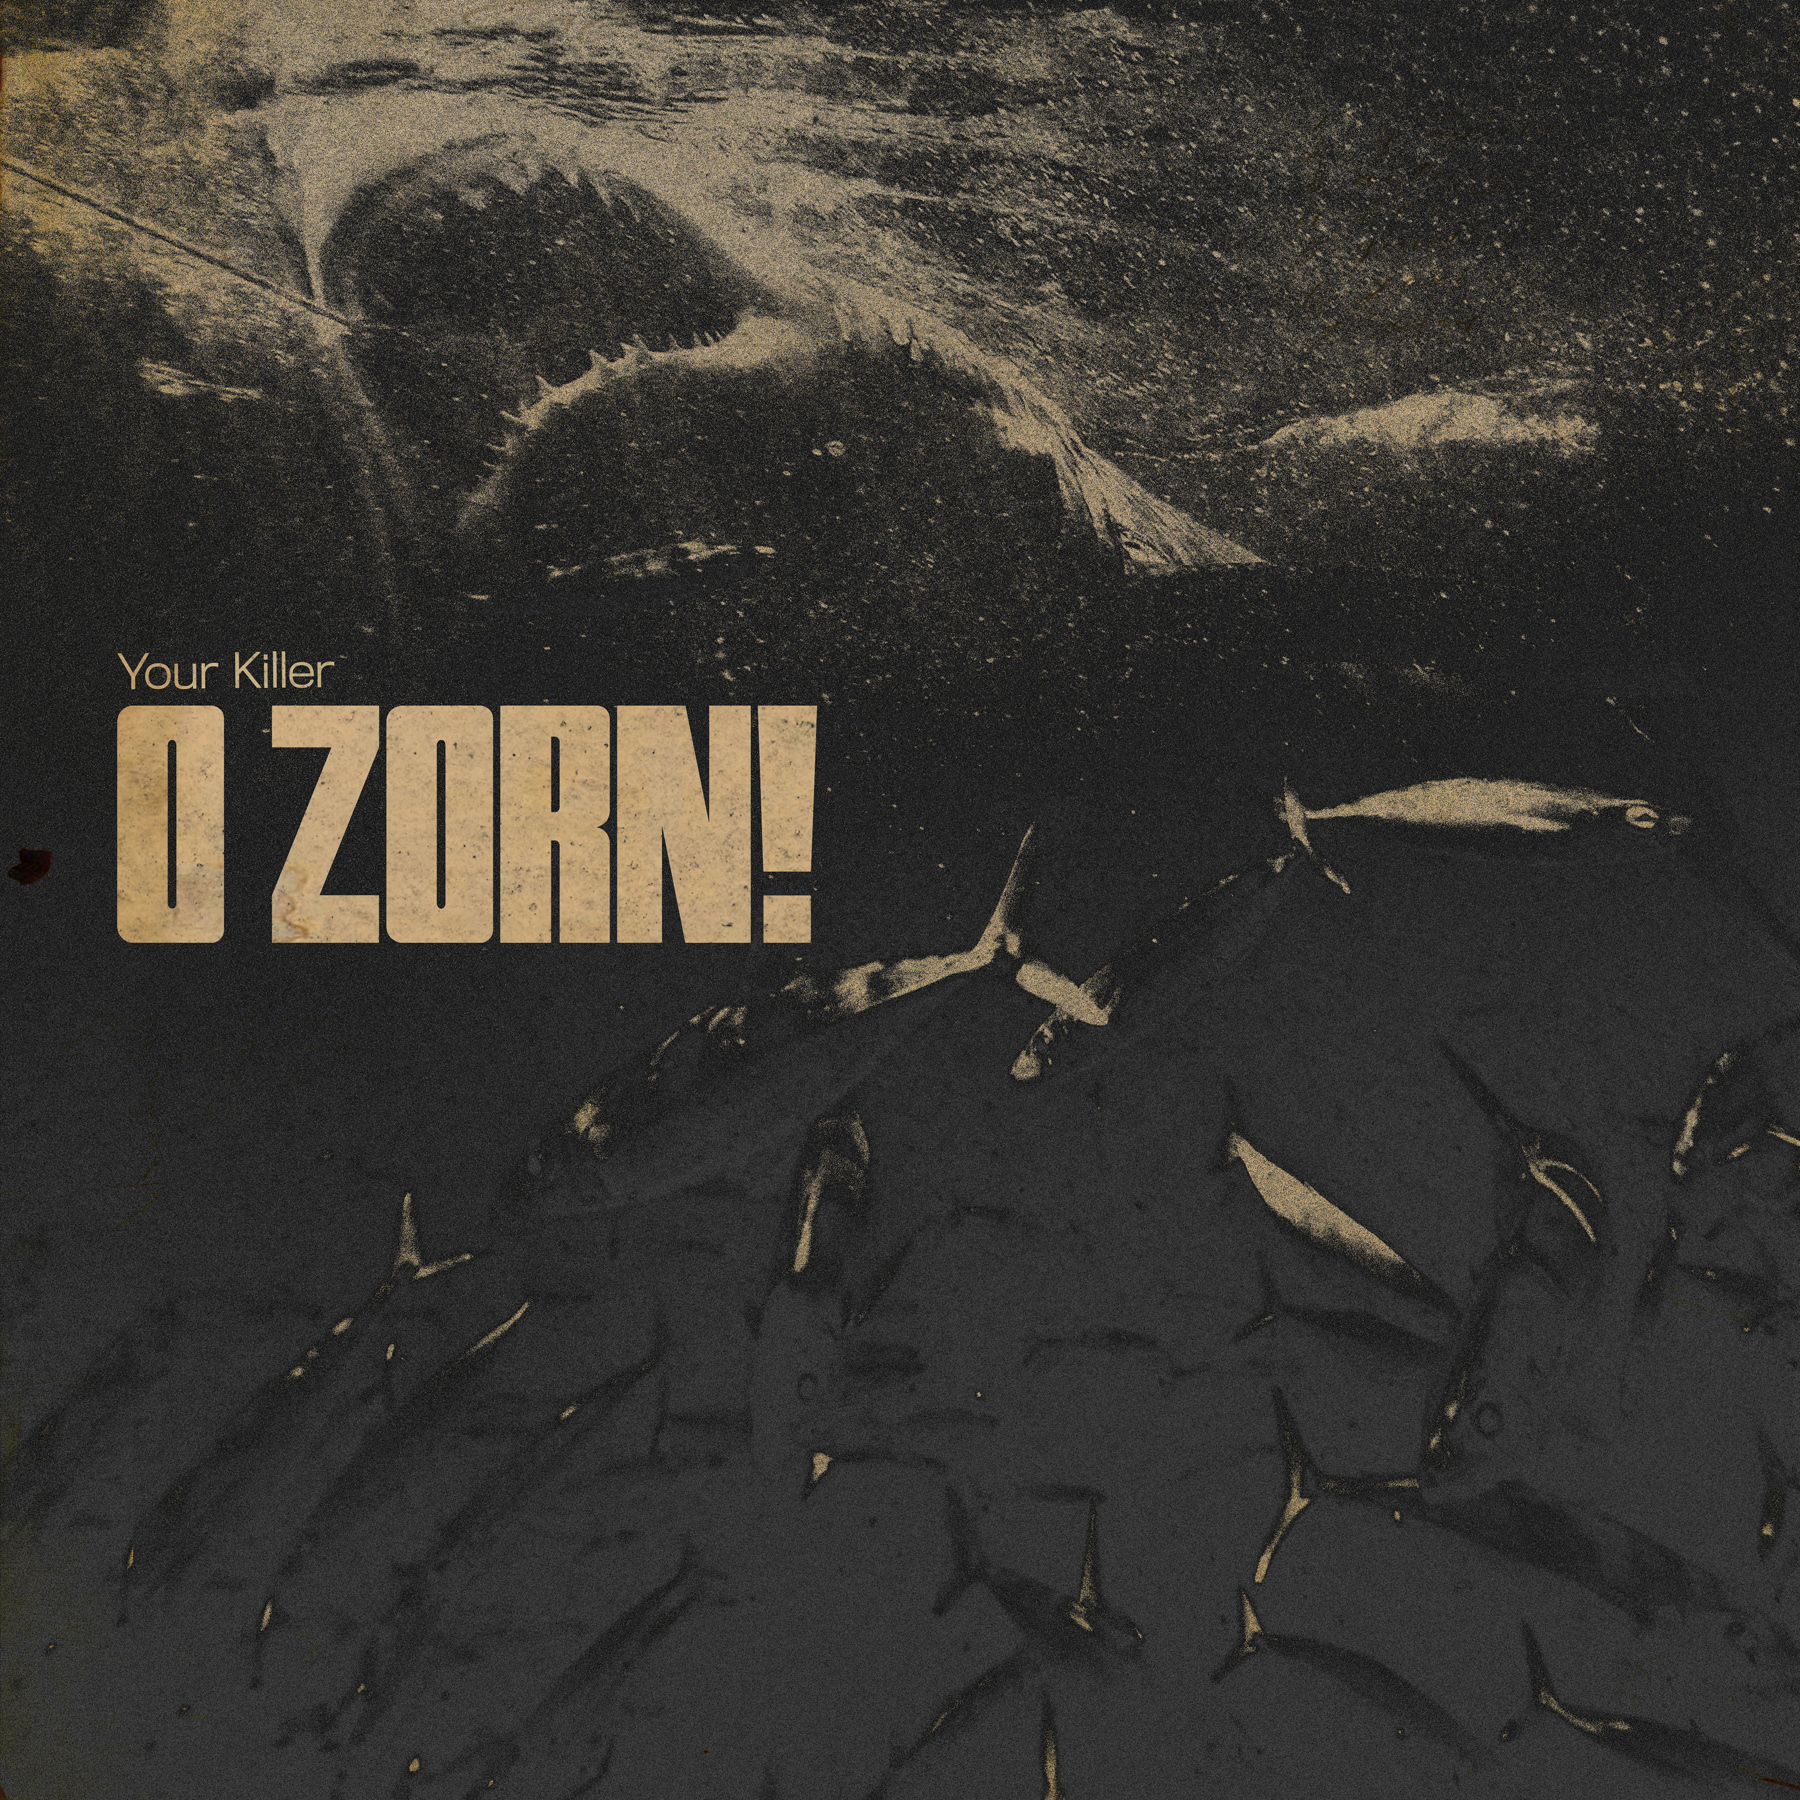 Your killer. John Zorn album Cover. Студио Киллерс 2020 сердца. Xpus (Italy) – in Umbra Mortis sedent.